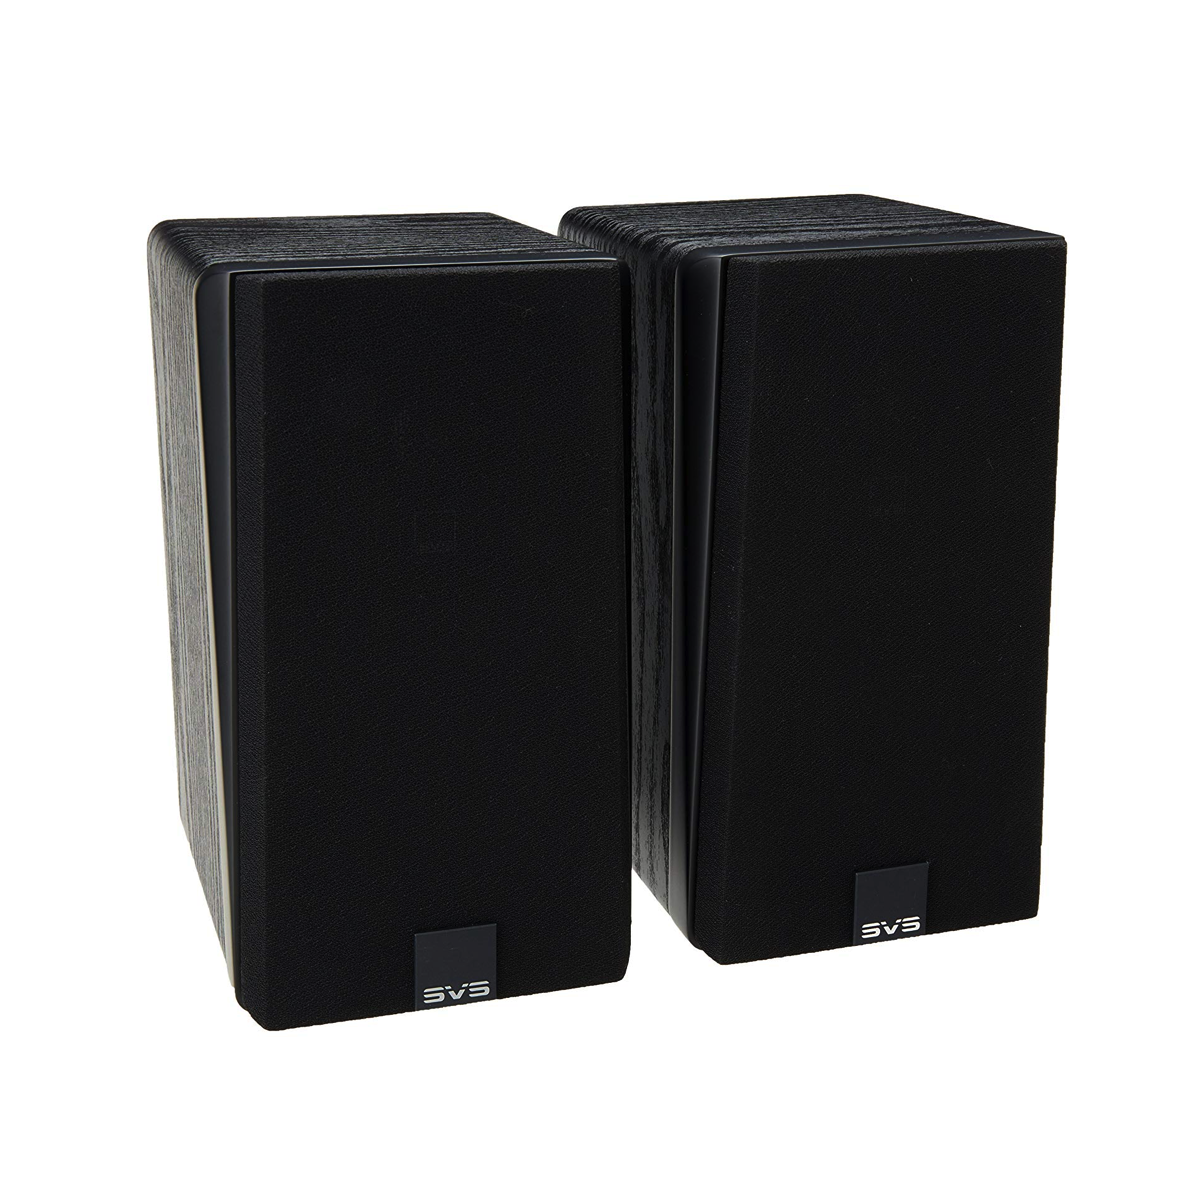 SVS Sound Prime Satellite SB 5.1 Speaker System - AVStore